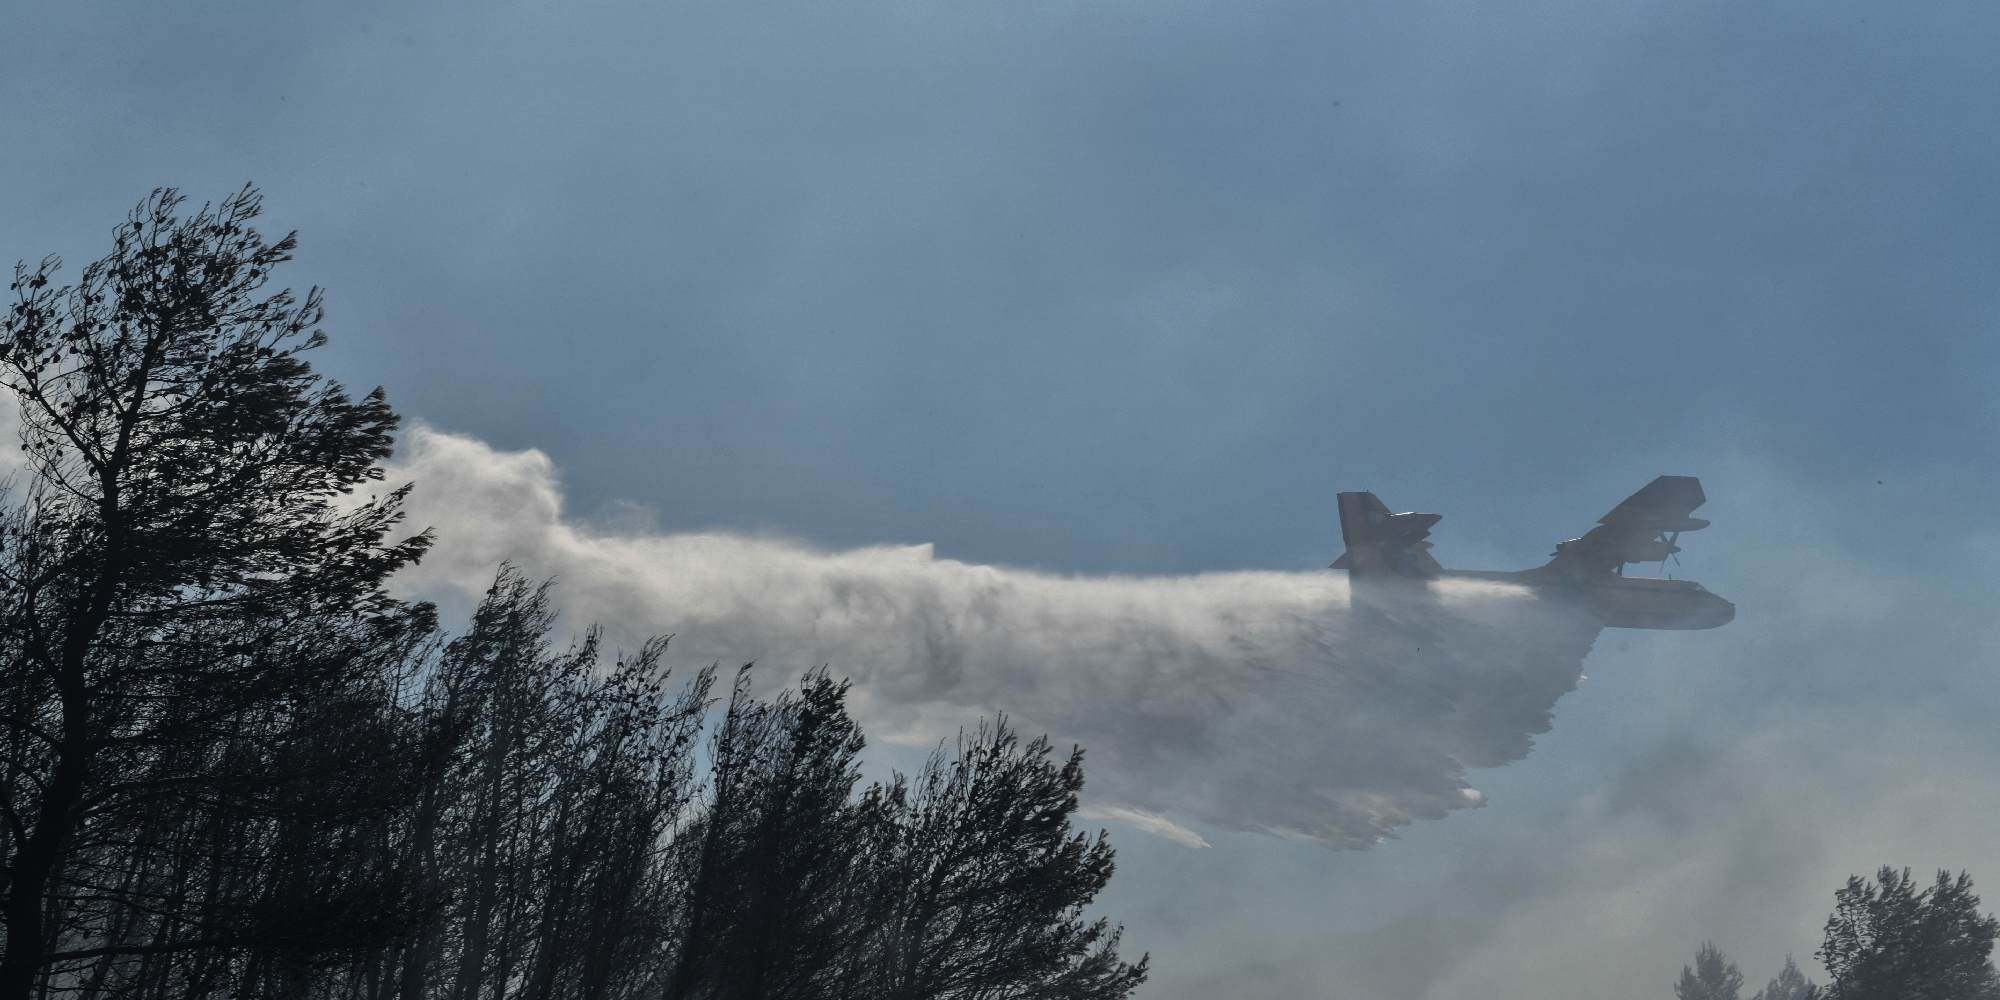 Πυροσβεστική αεροπλάνο στη μάχη κατάσβεσης πυρκαγιάς